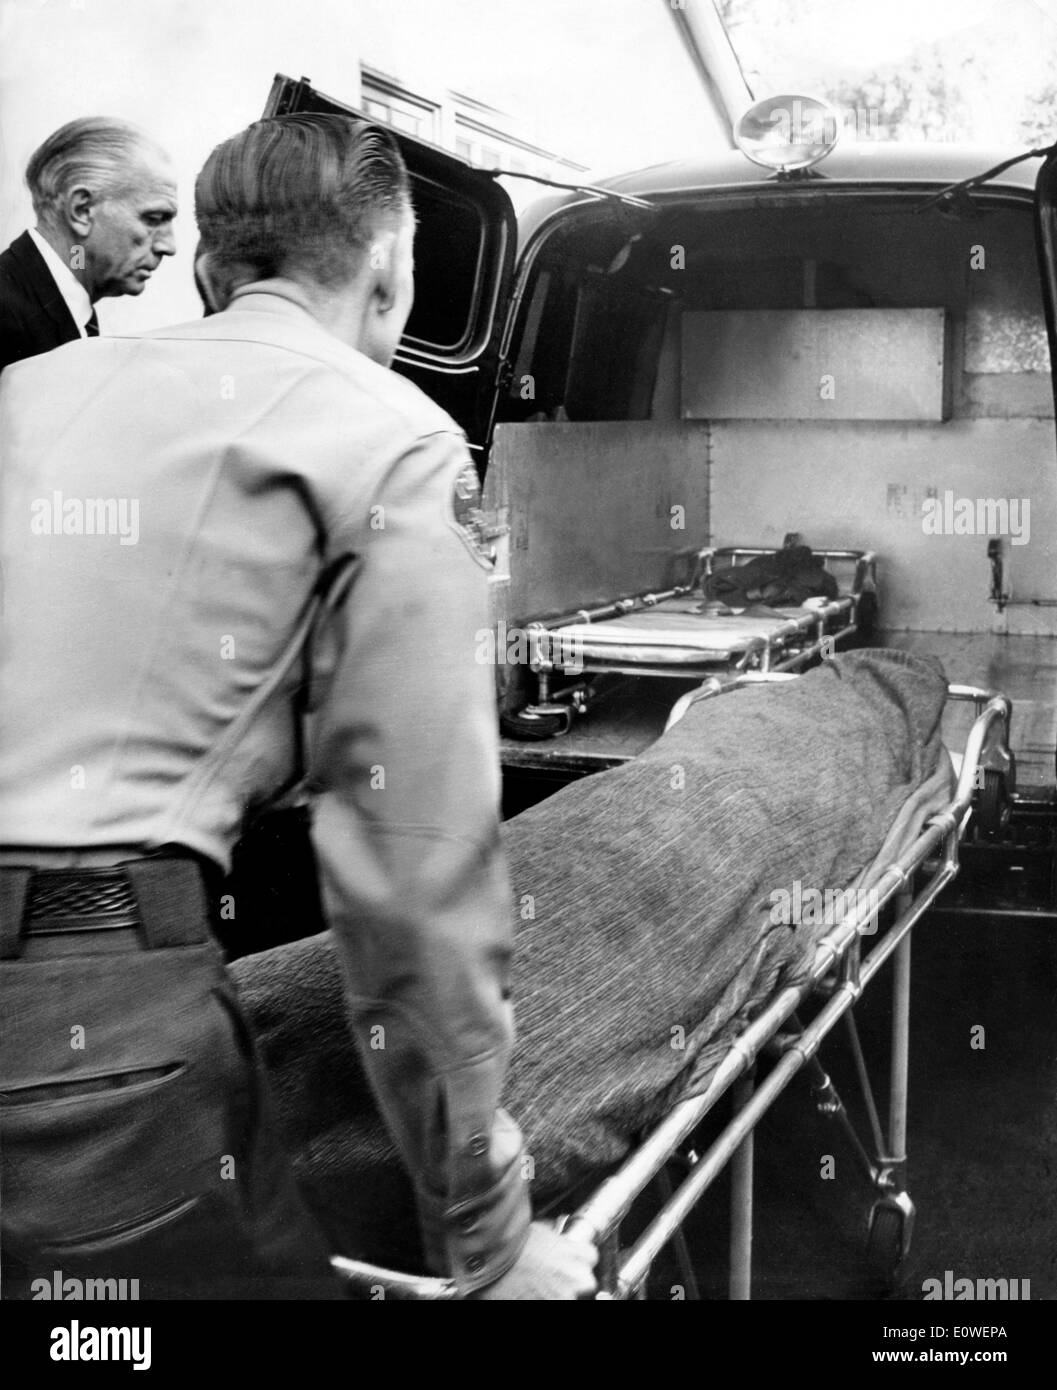 Verhüllte Leiche von Starlet Marilyn Monroe nach wurde sie tot aufgefunden Stockfoto